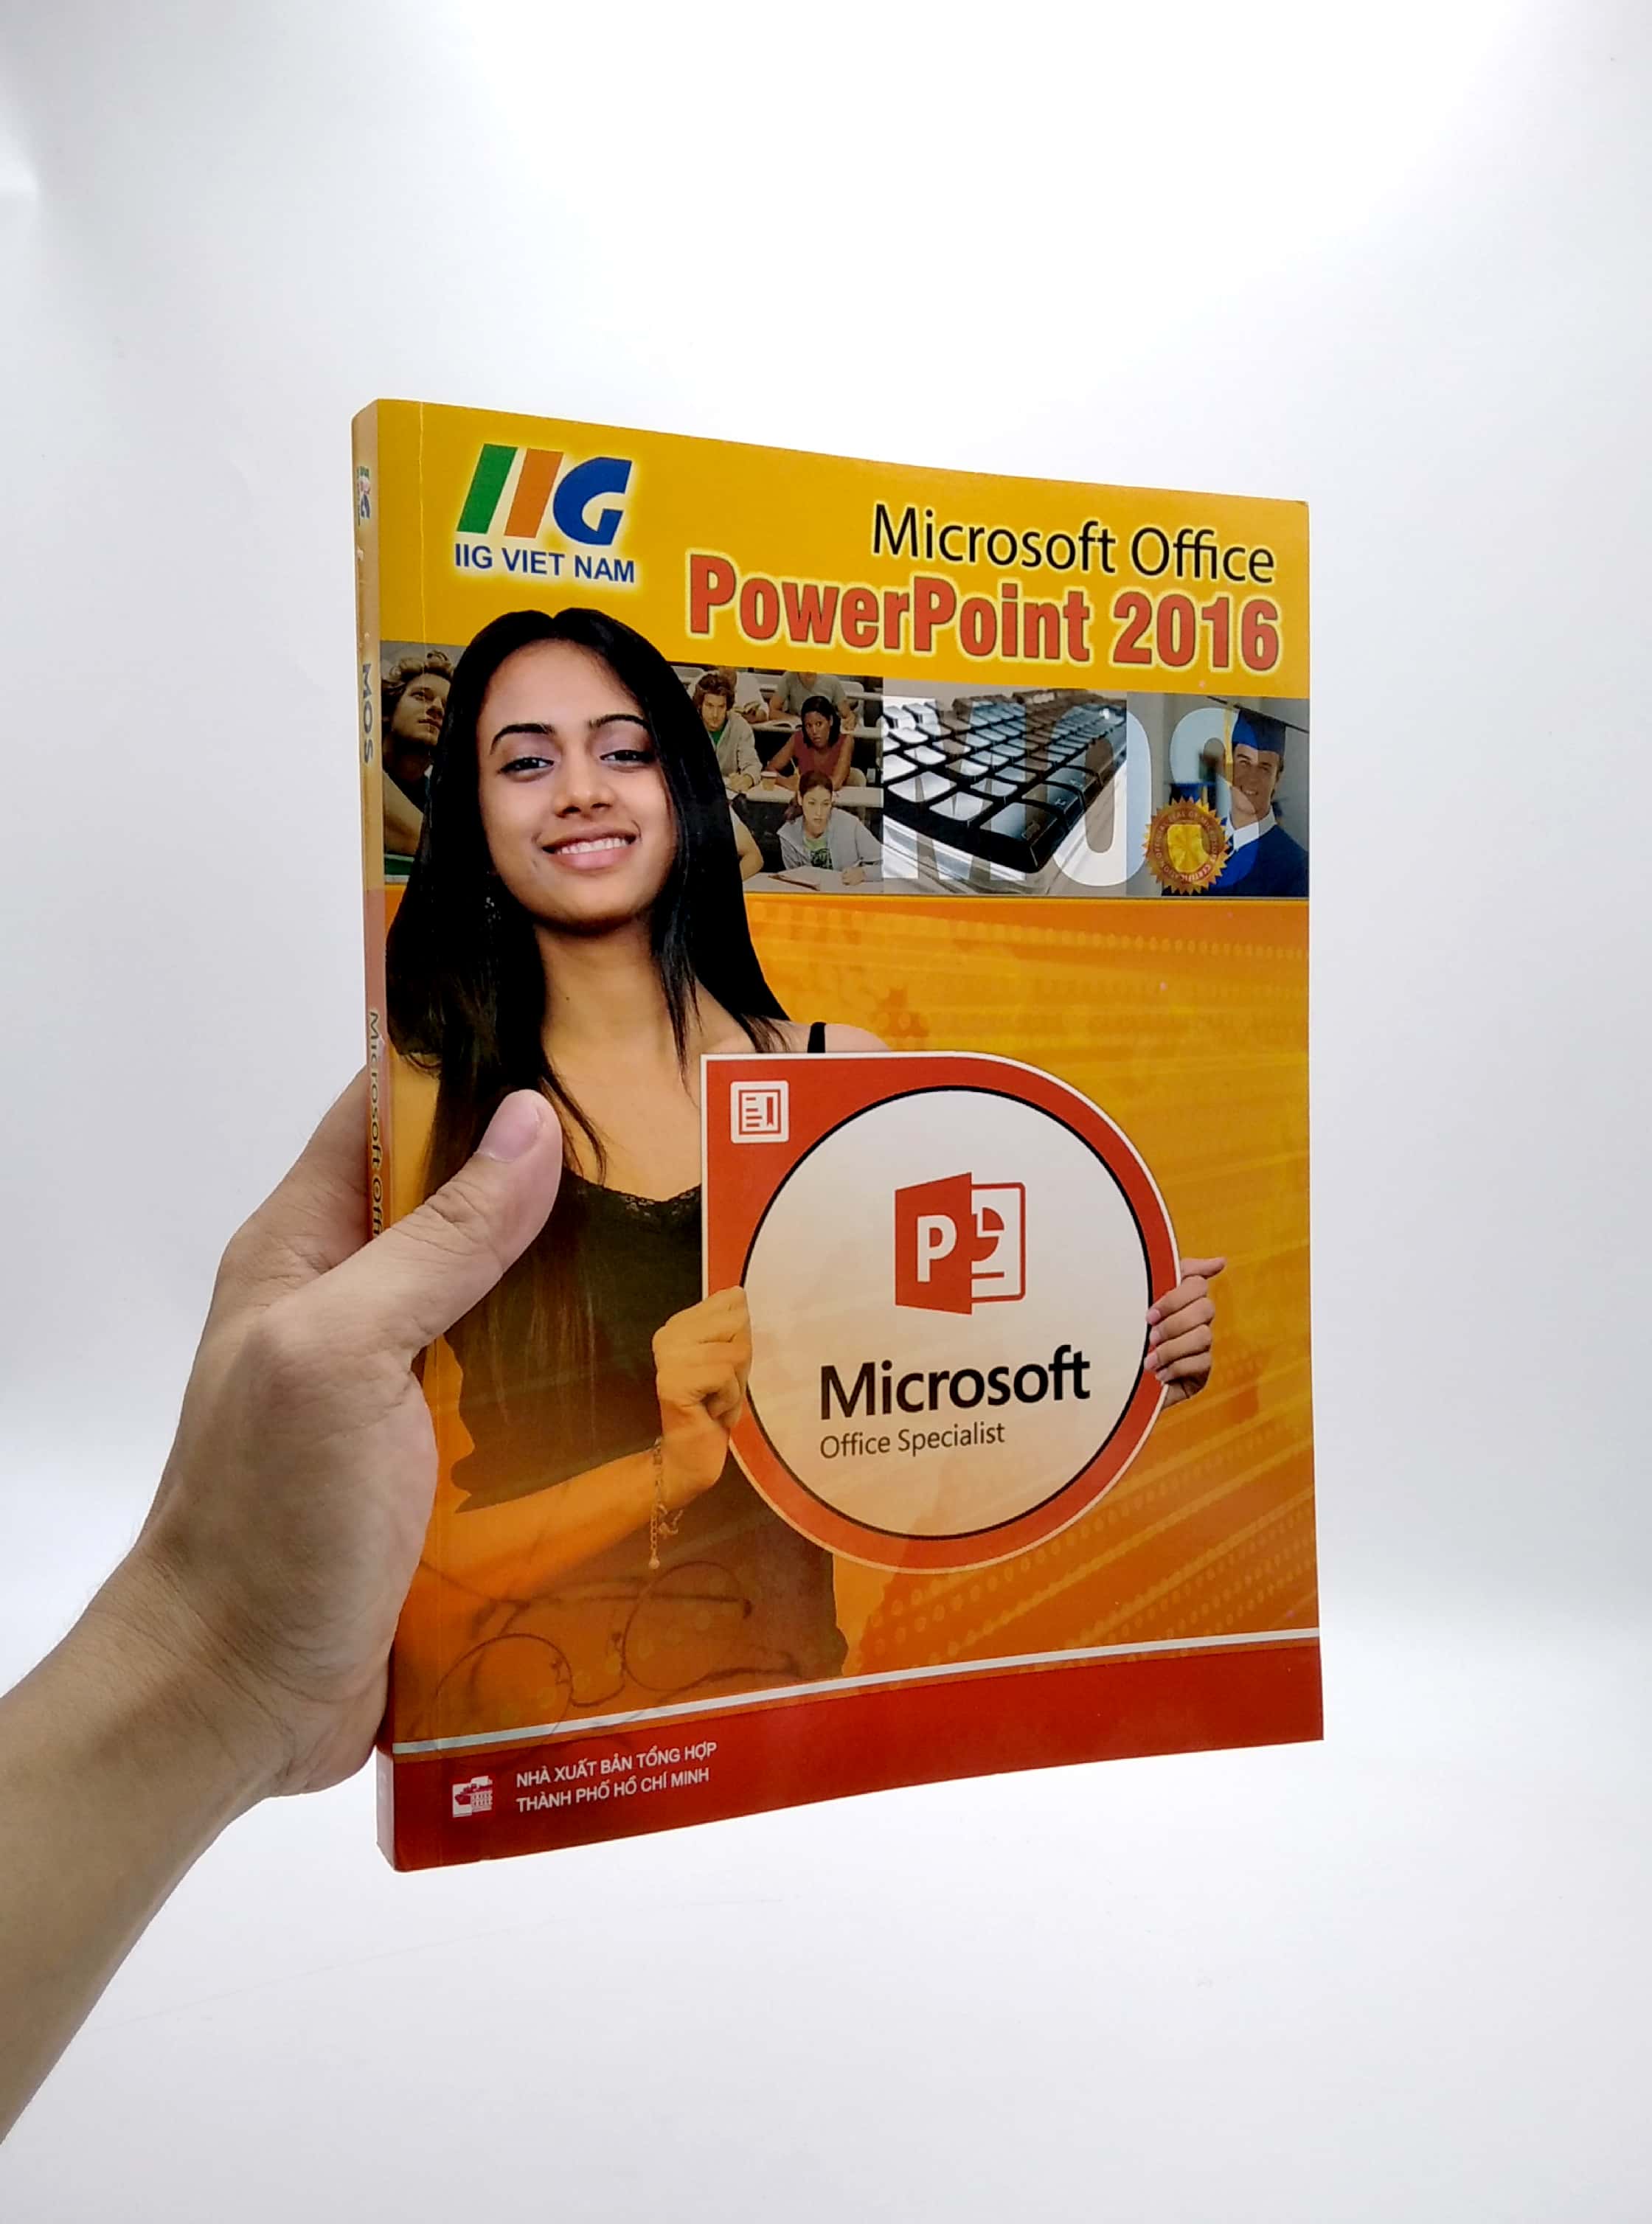 Tìm kiếm Microsoft Office PowerPoint 2016 tốt nhất cho công việc của bạn? Truy cập Lazada.vn để mua Microsoft Office PowerPoint 2016 và được tham gia những chương trình khuyến mãi tuyệt vời nhất. Tận dụng cơ hội này để có được giá ưu đãi và sử dụng PowerPoint 2016 để tạo ra những bài thuyết trình chuyên nghiệp và đẹp mắt hơn bao giờ hết.